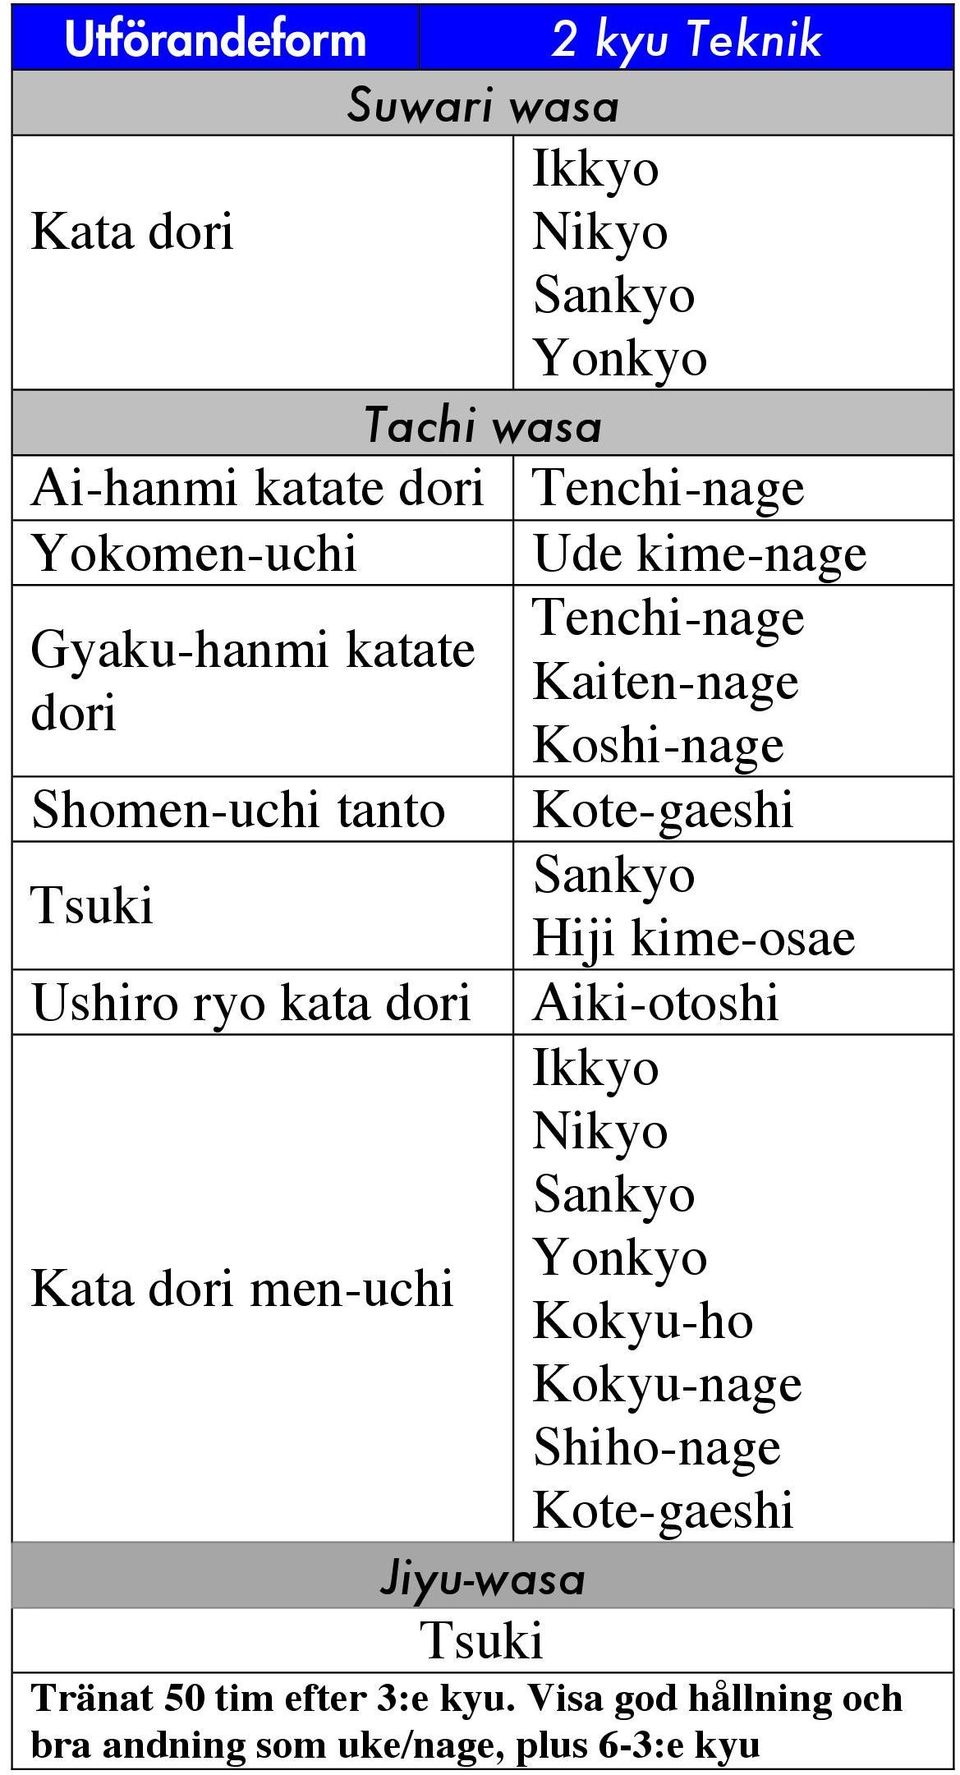 Koshi-nage Hiji kime-osae Aiki-otoshi Tränat 50 tim efter 3:e